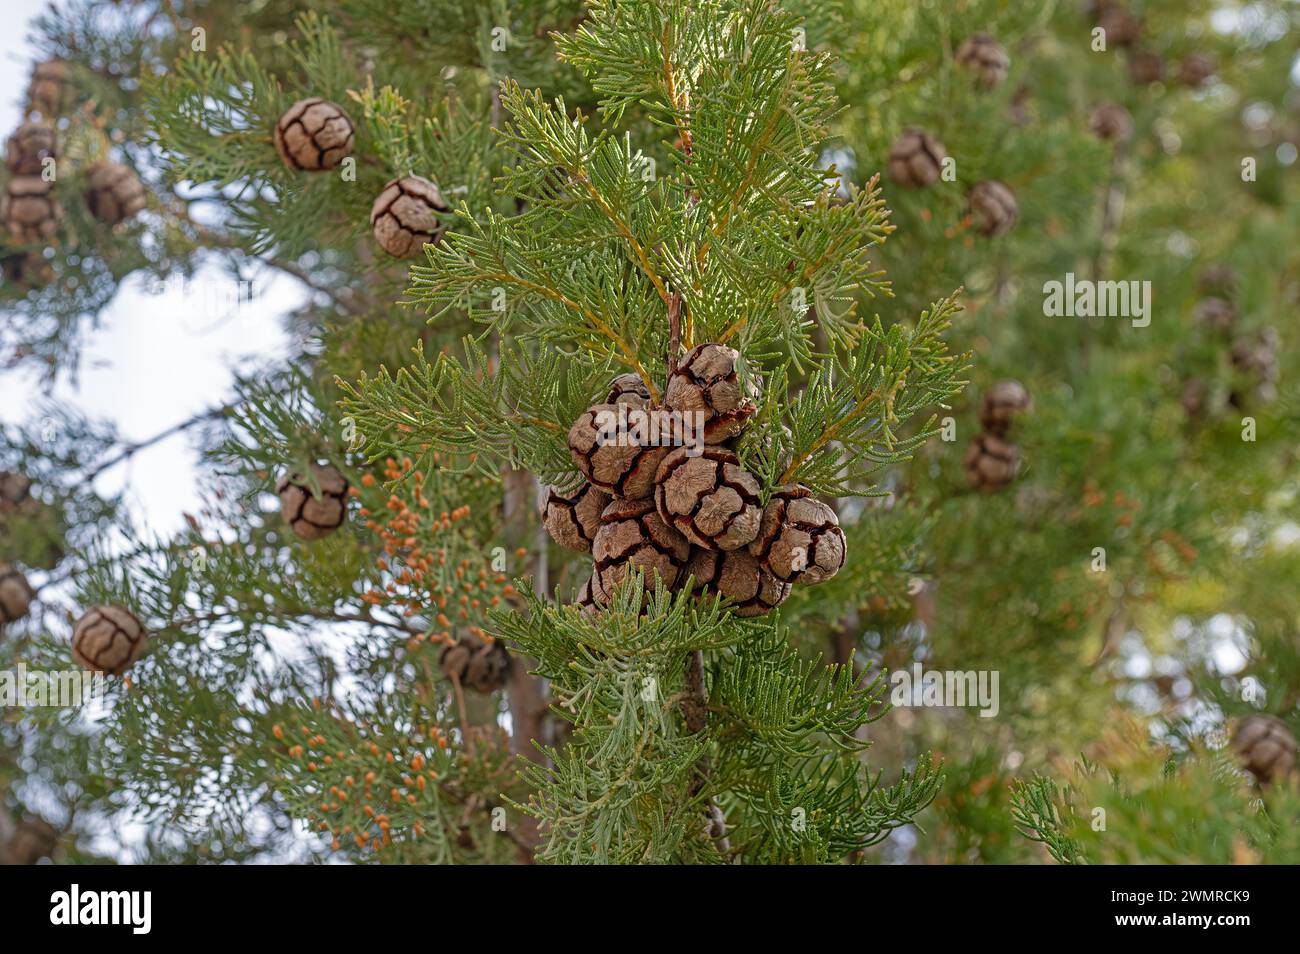 L'arbre et ses petits cônes, également connu sous le nom de cyprès de cimetière en Turquie. Cupressus sempervirens. Banque D'Images